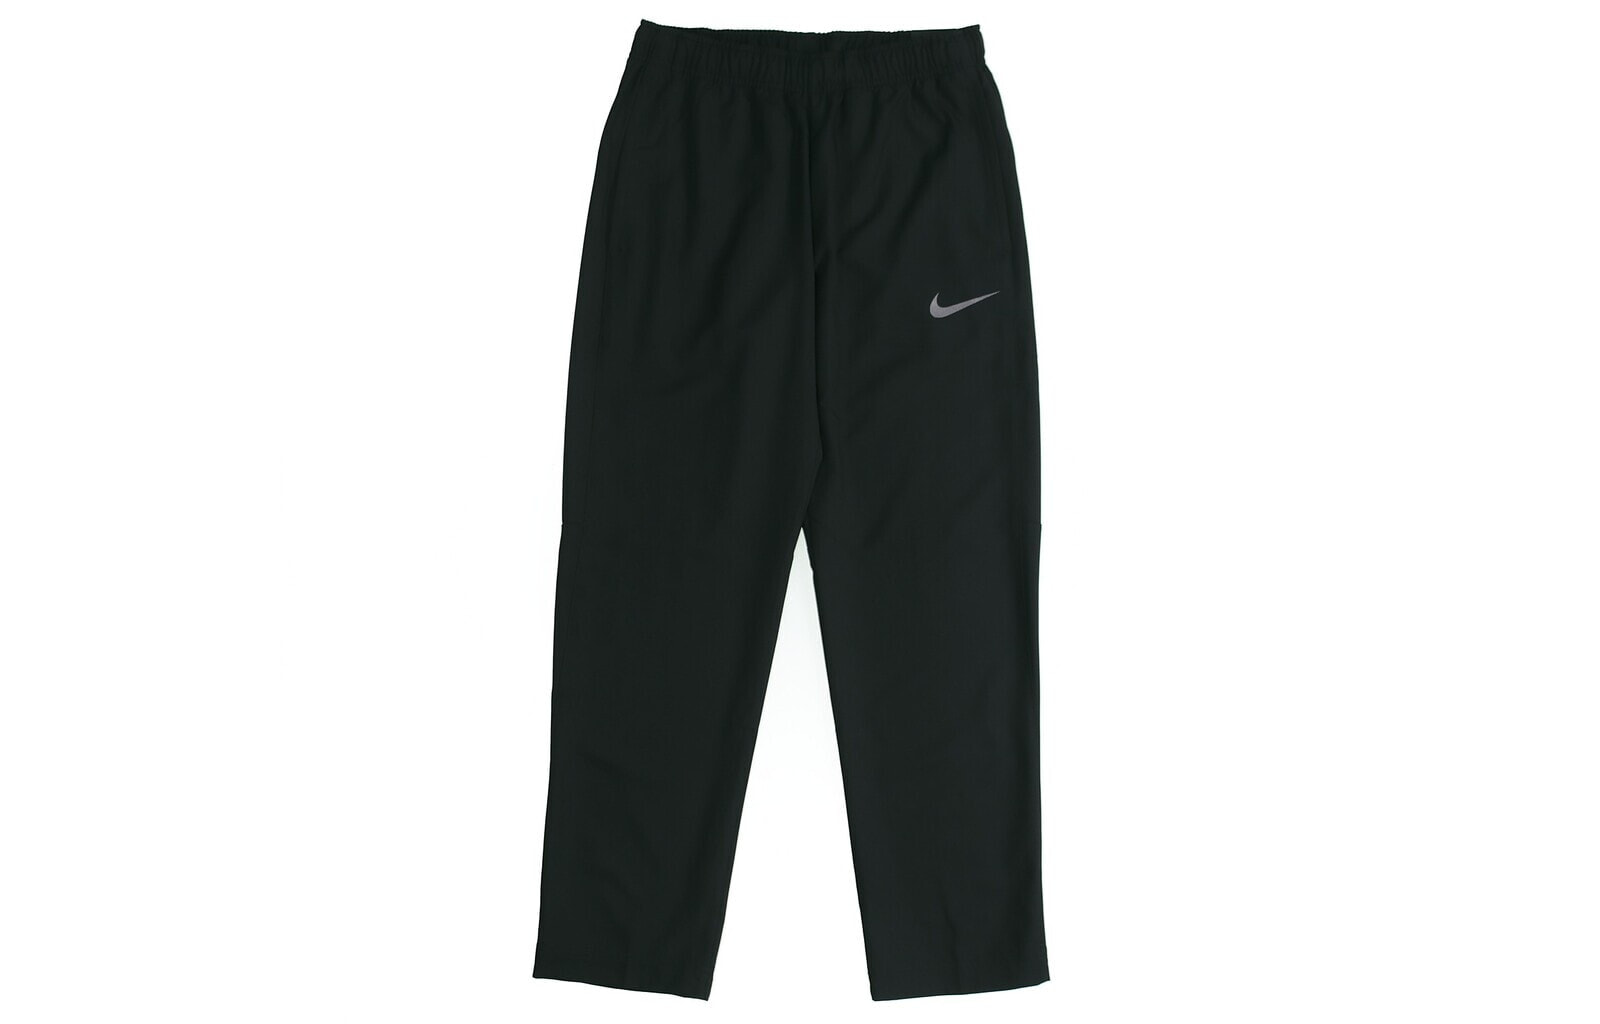 Nike As M Nk Dry Pant Team Woven 梭织跑步训练运动长裤 春季 男款 黑色 / Брюки Nike As M Nk Dry Pant Team Woven